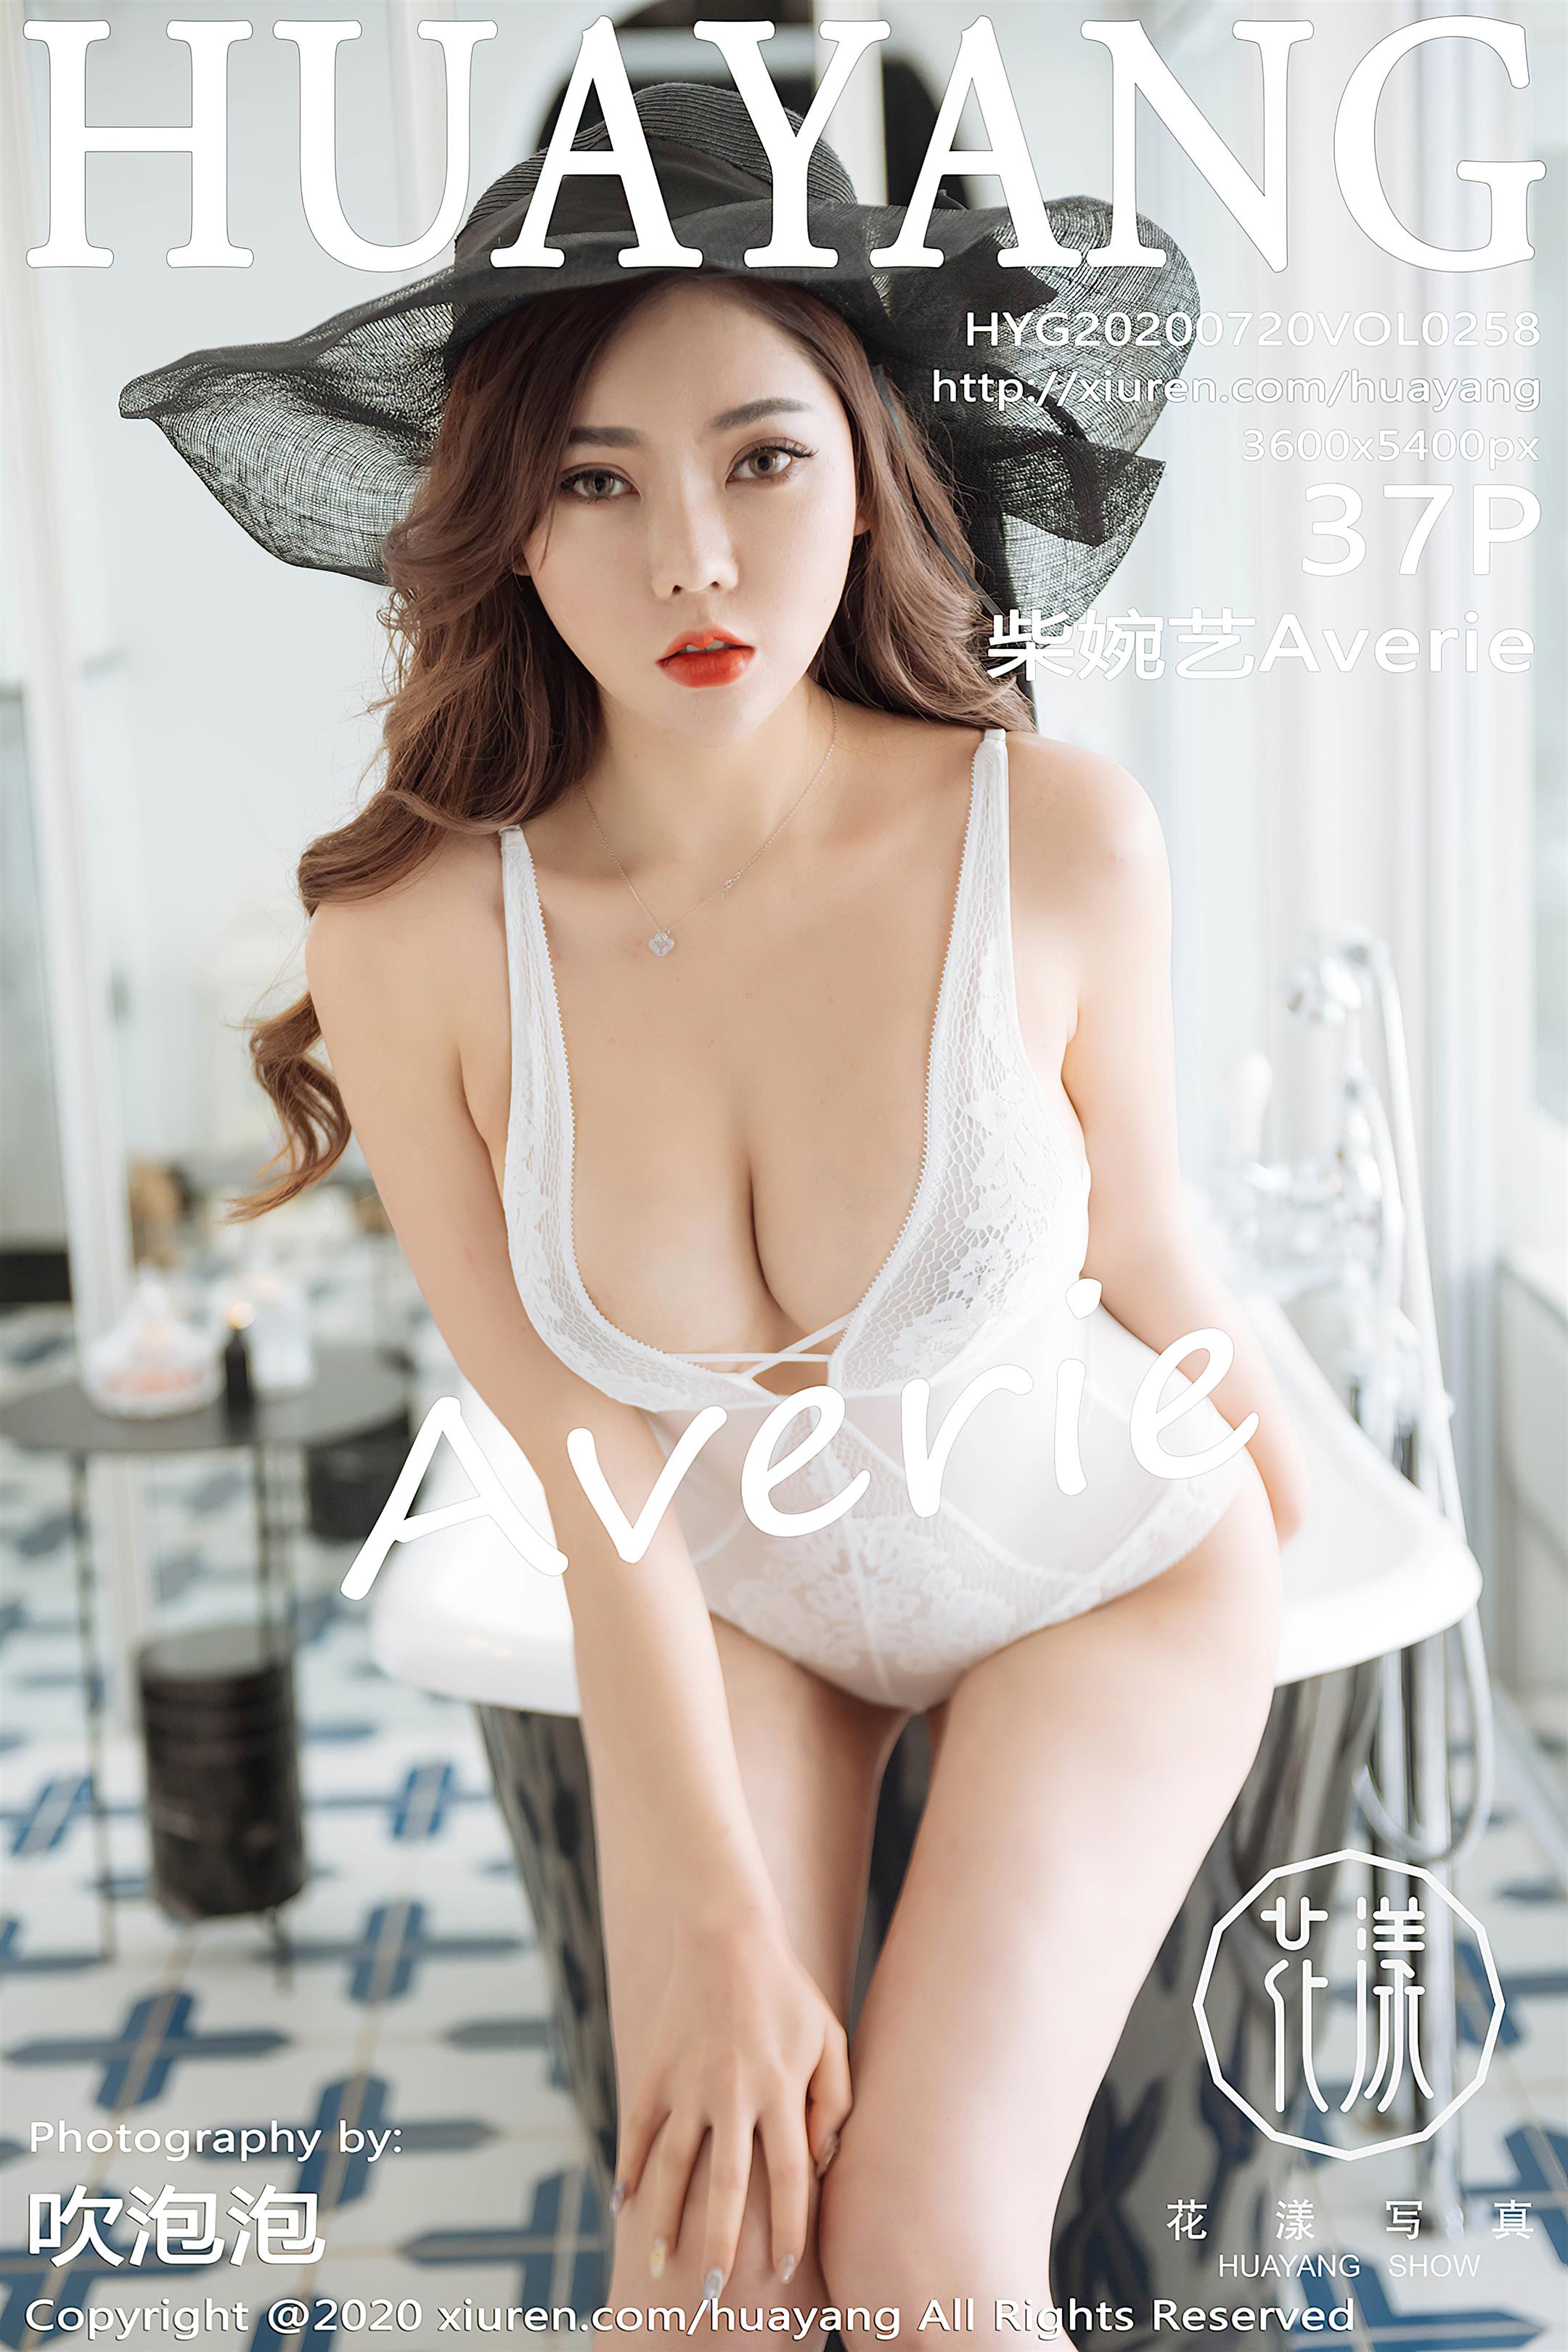 HuaYang花漾Show 2020-07-20 Vol.258 柴婉艺Averie - 24.jpg